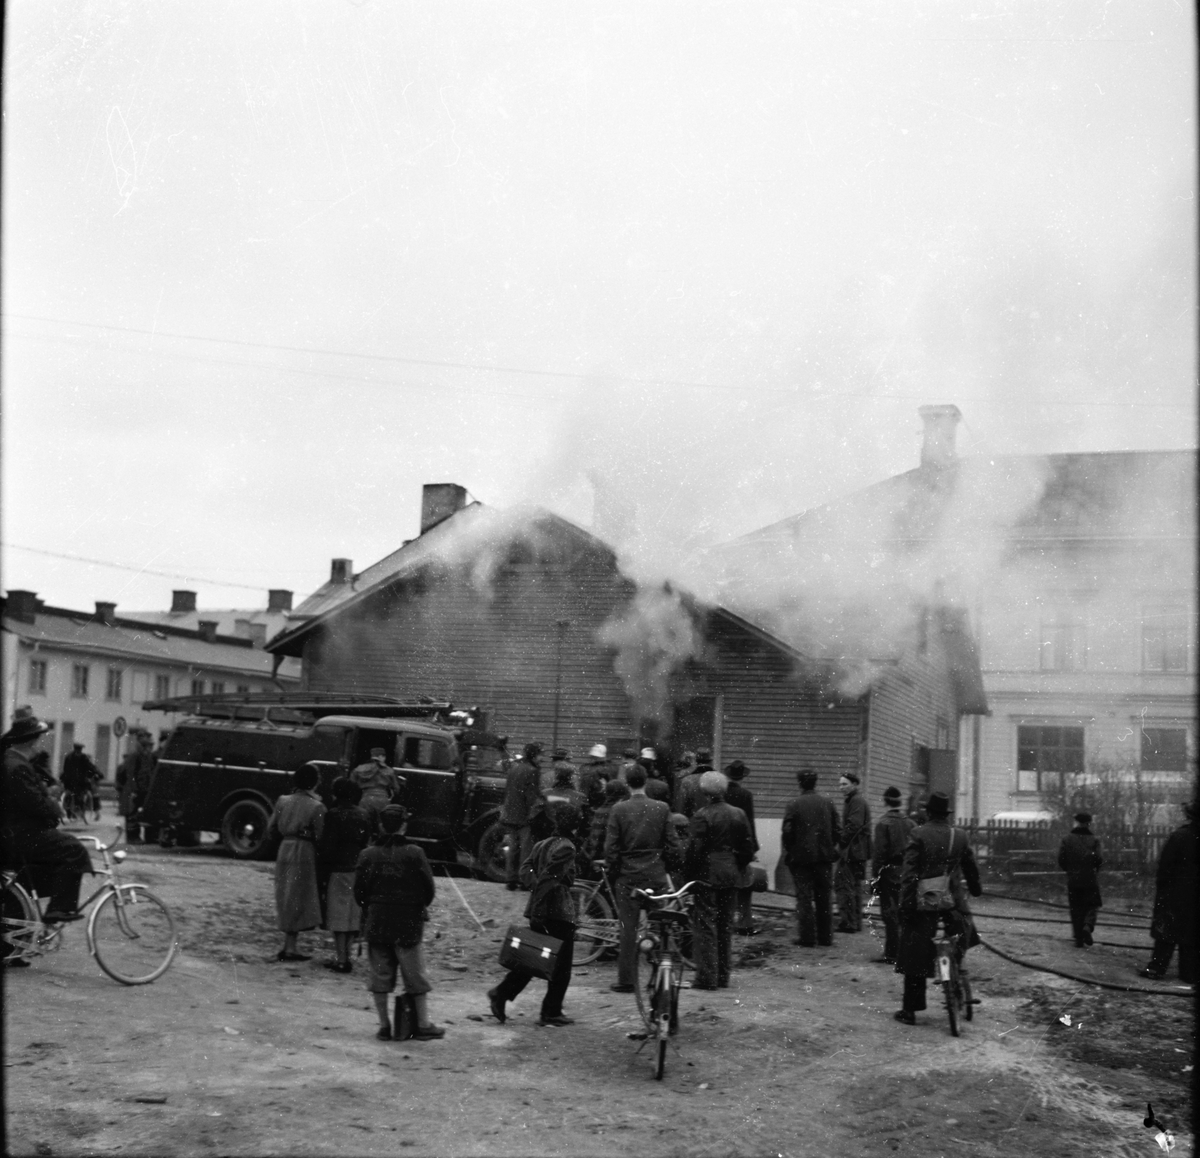 Brandbilder från hörnet Stationsgatan-Nygatan.
Brand på skomakeriet godtemplartomten
bakom metodistkyrkan.